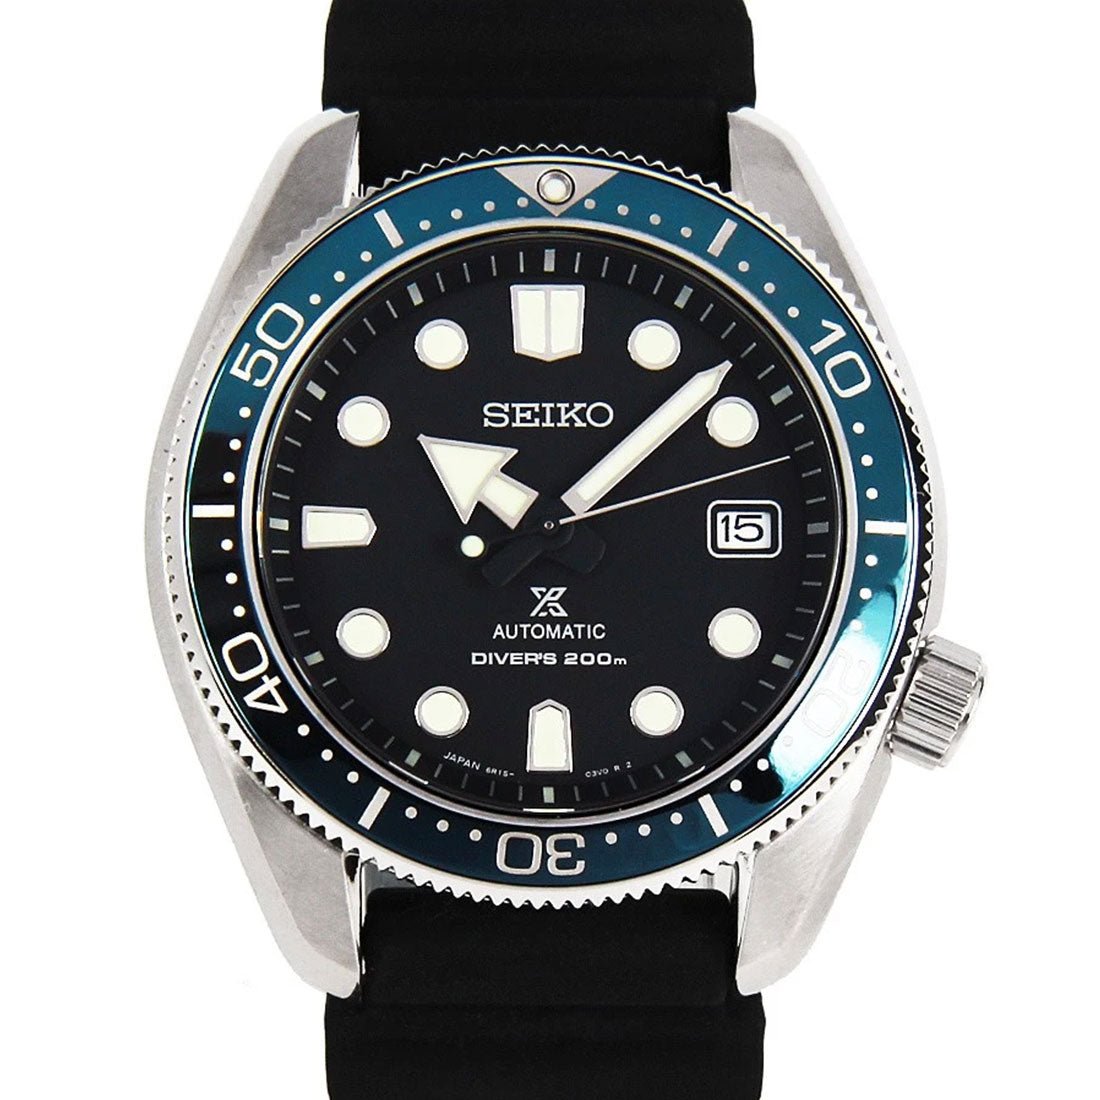 Seiko Prospex Baby MM Divers JDM Watch SBDC063 SBDC063J1 -Seiko